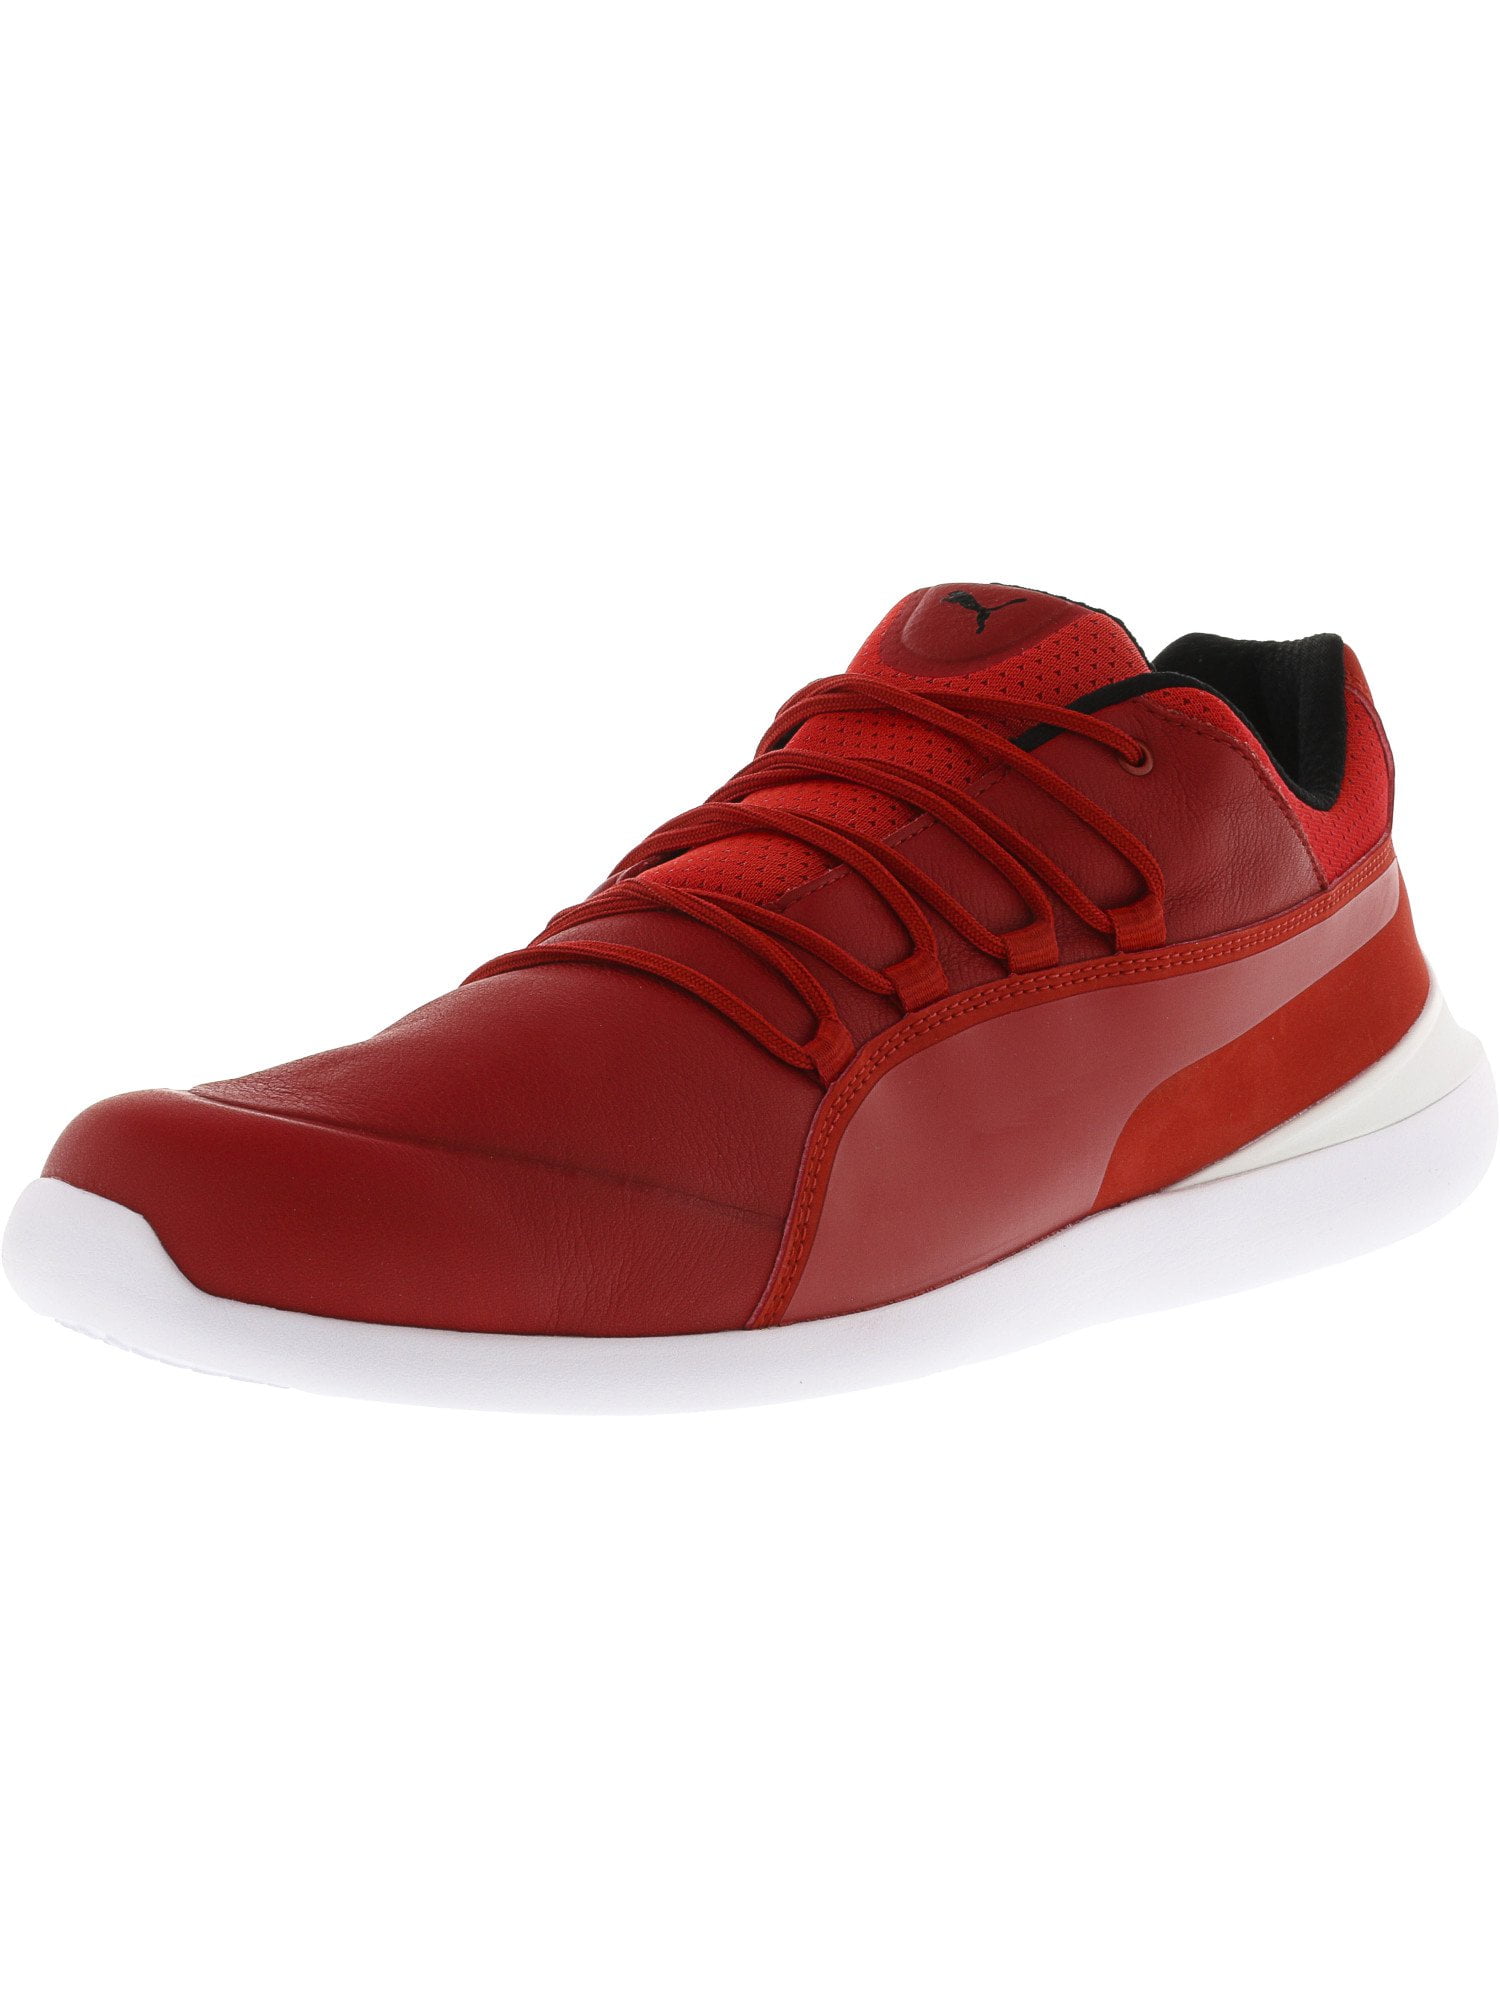 Men's Evo Cat Rosso Corsa / White Ankle-High Fashion Sneaker - 12M - Walmart.com